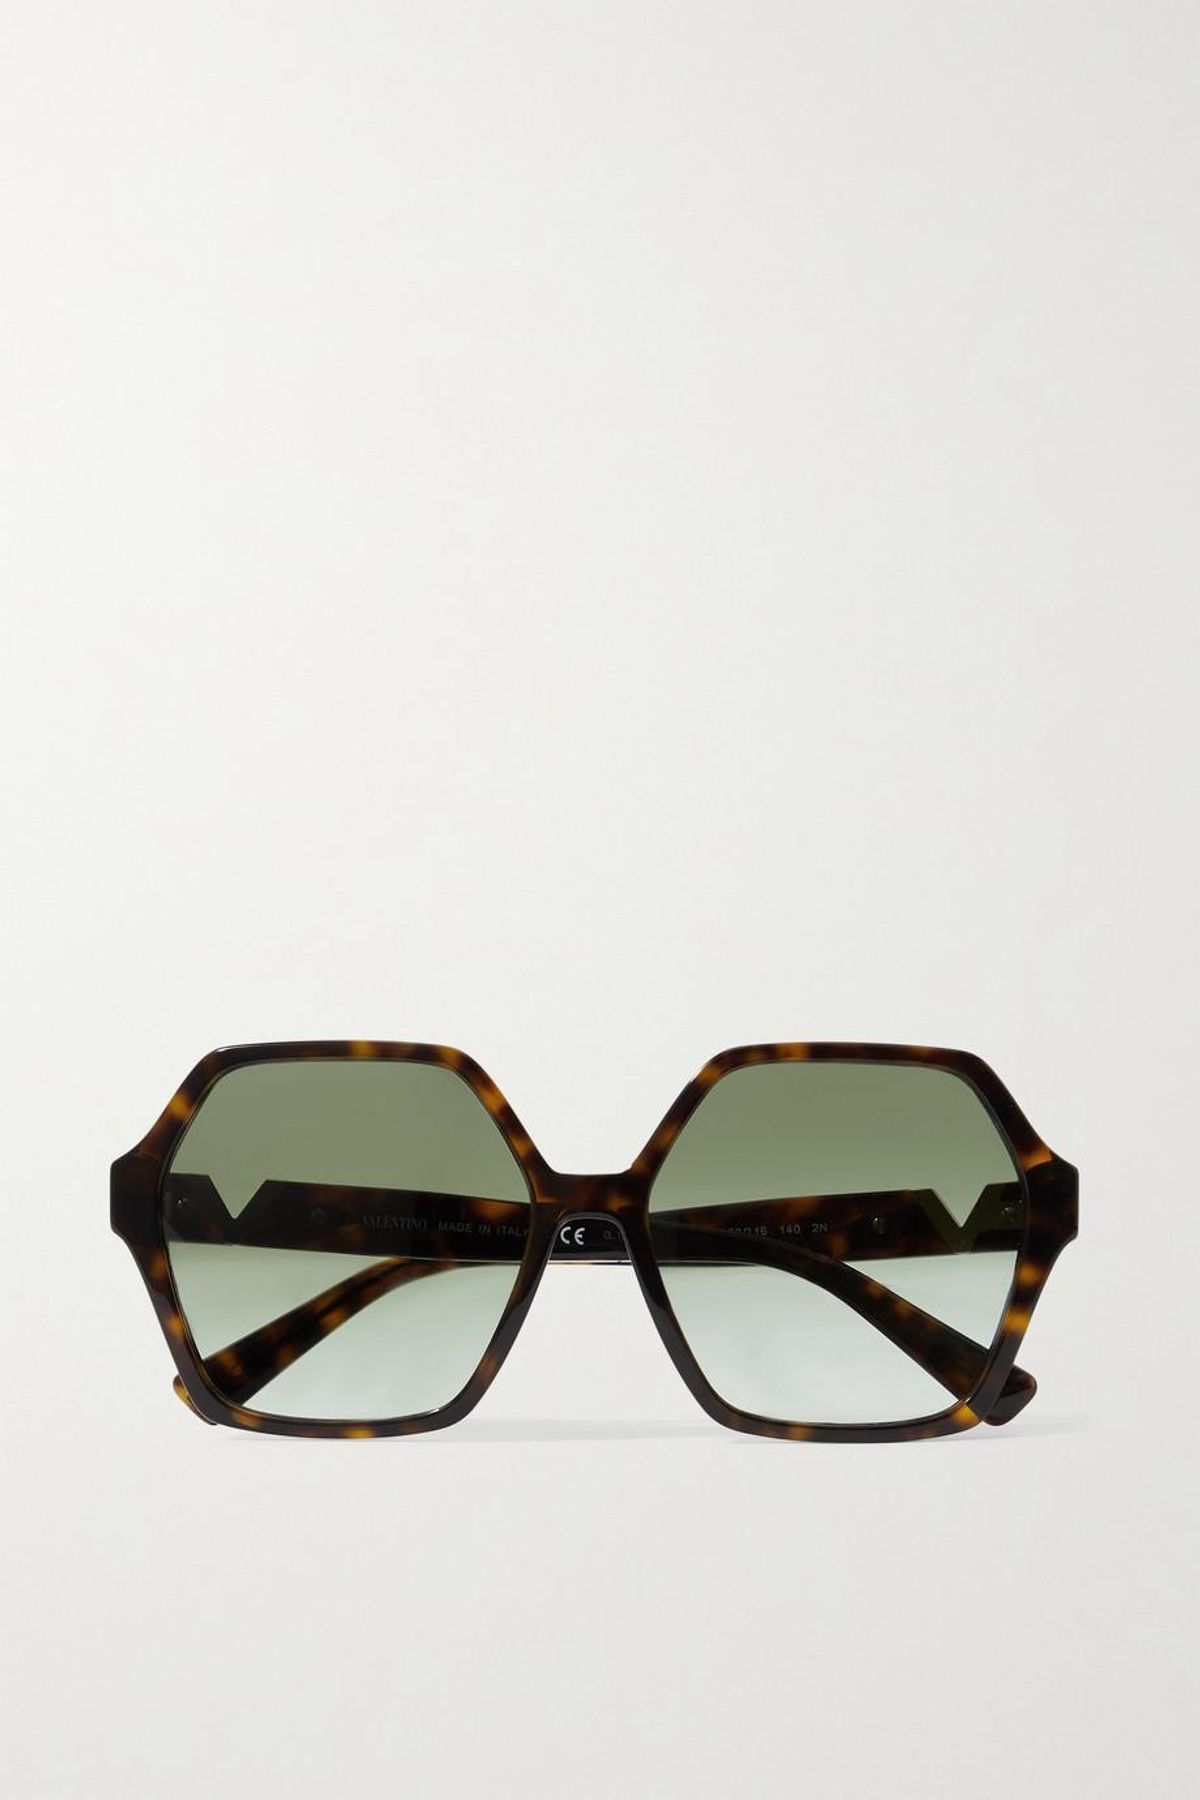 valentino garavani hexagon frame tortoiseshell acetate sunglasses